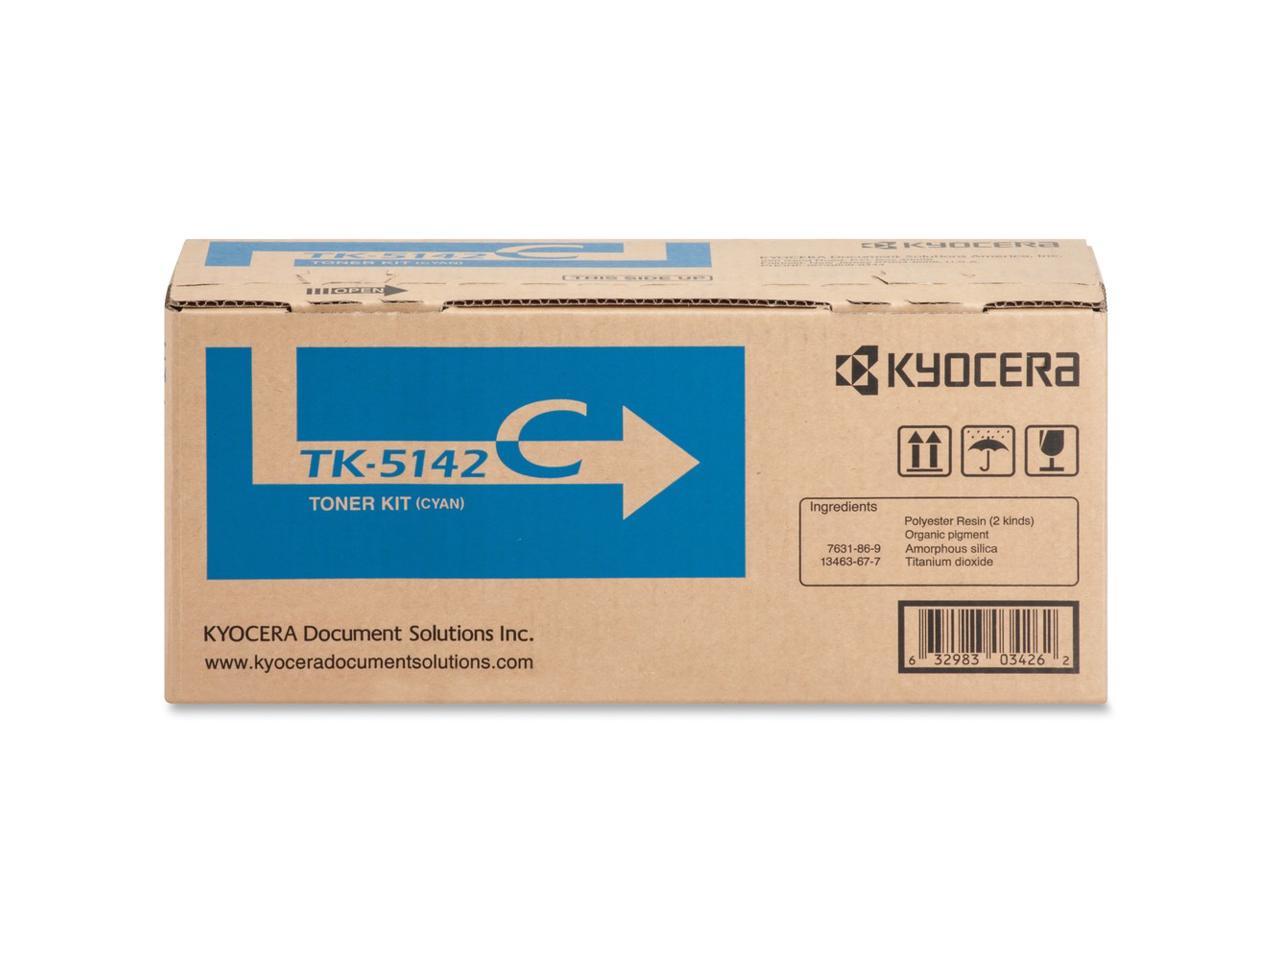 TK-5142C Cyan Toner Cartridge for Kyocera Mita Ecosys M6030/ M6530/ P6130 